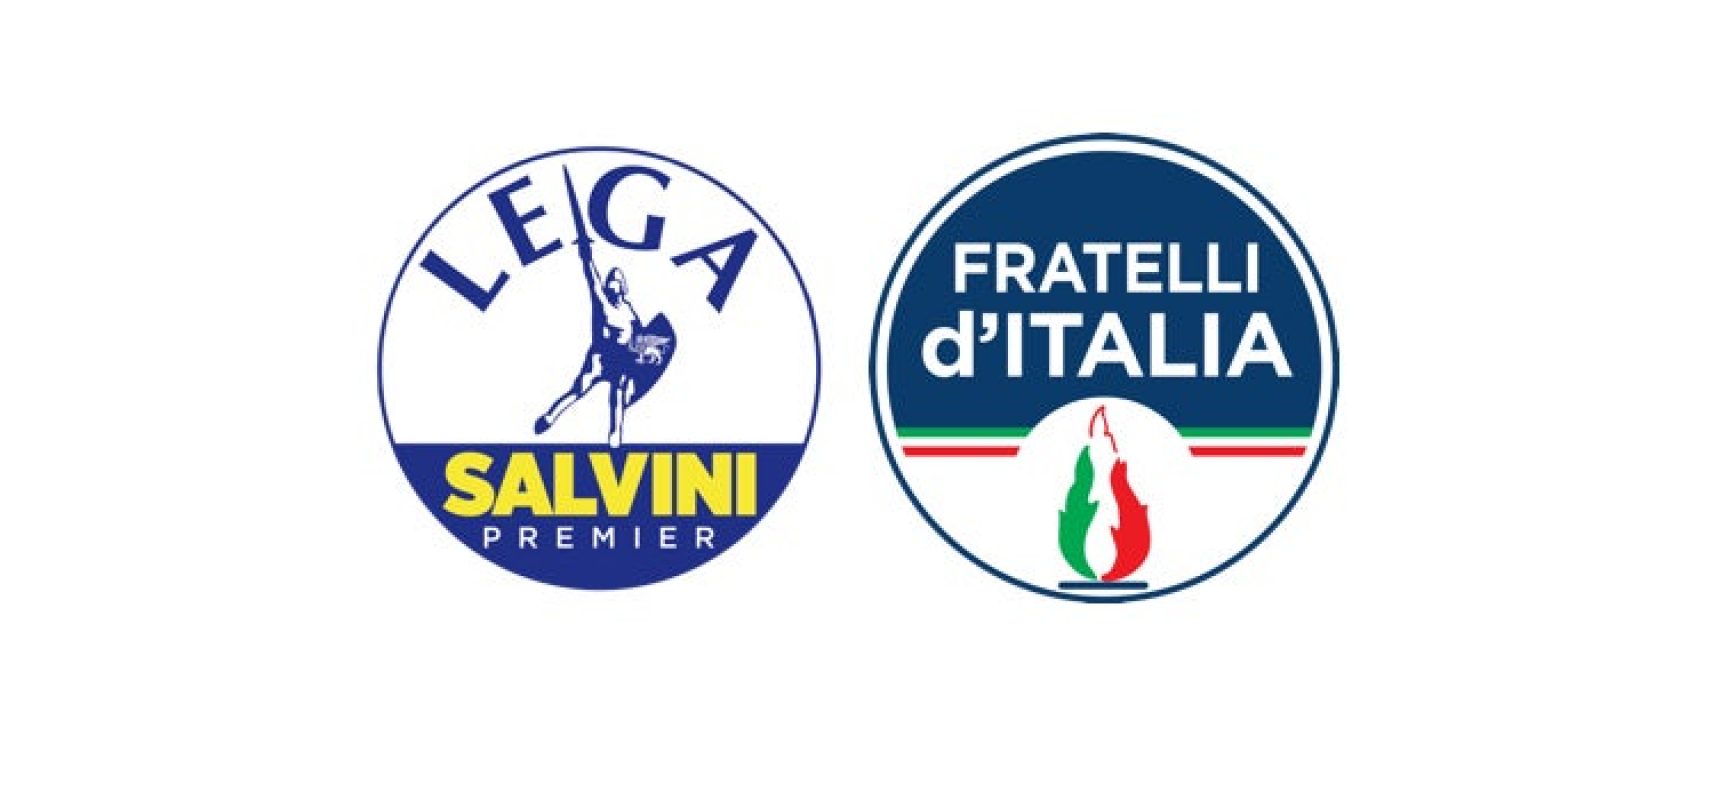 Lega e Fratelli d’Italia contro presenza Gobetti a Bisceglie: “Fuori politica dalle scuole”